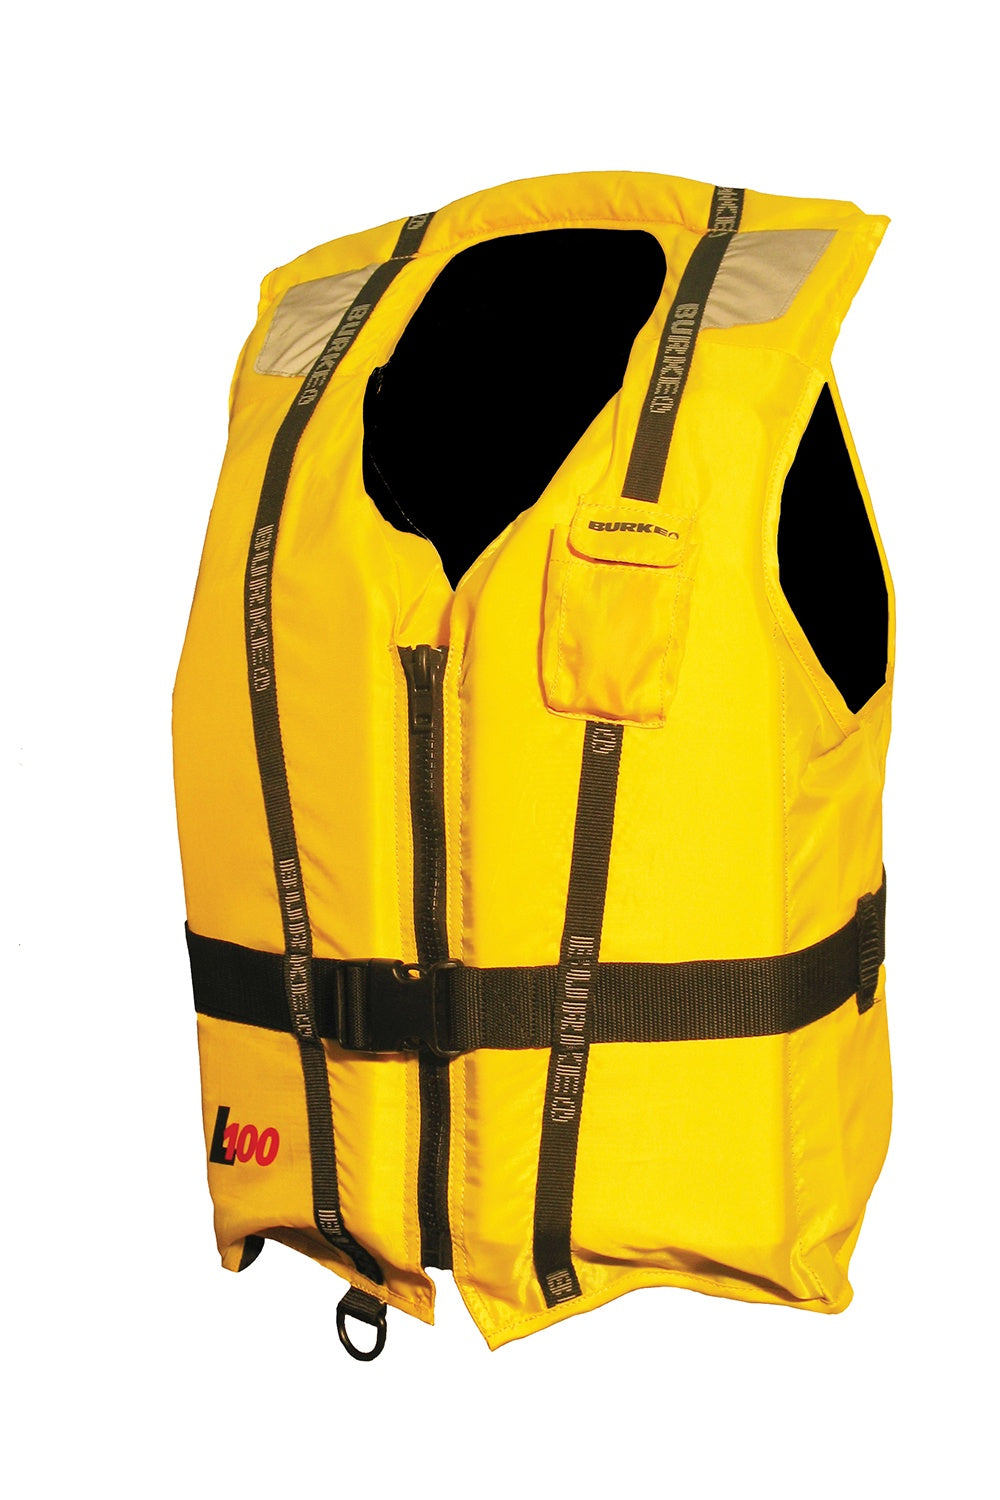 BURKE L100 Level 100 Lifejacket - ADULT